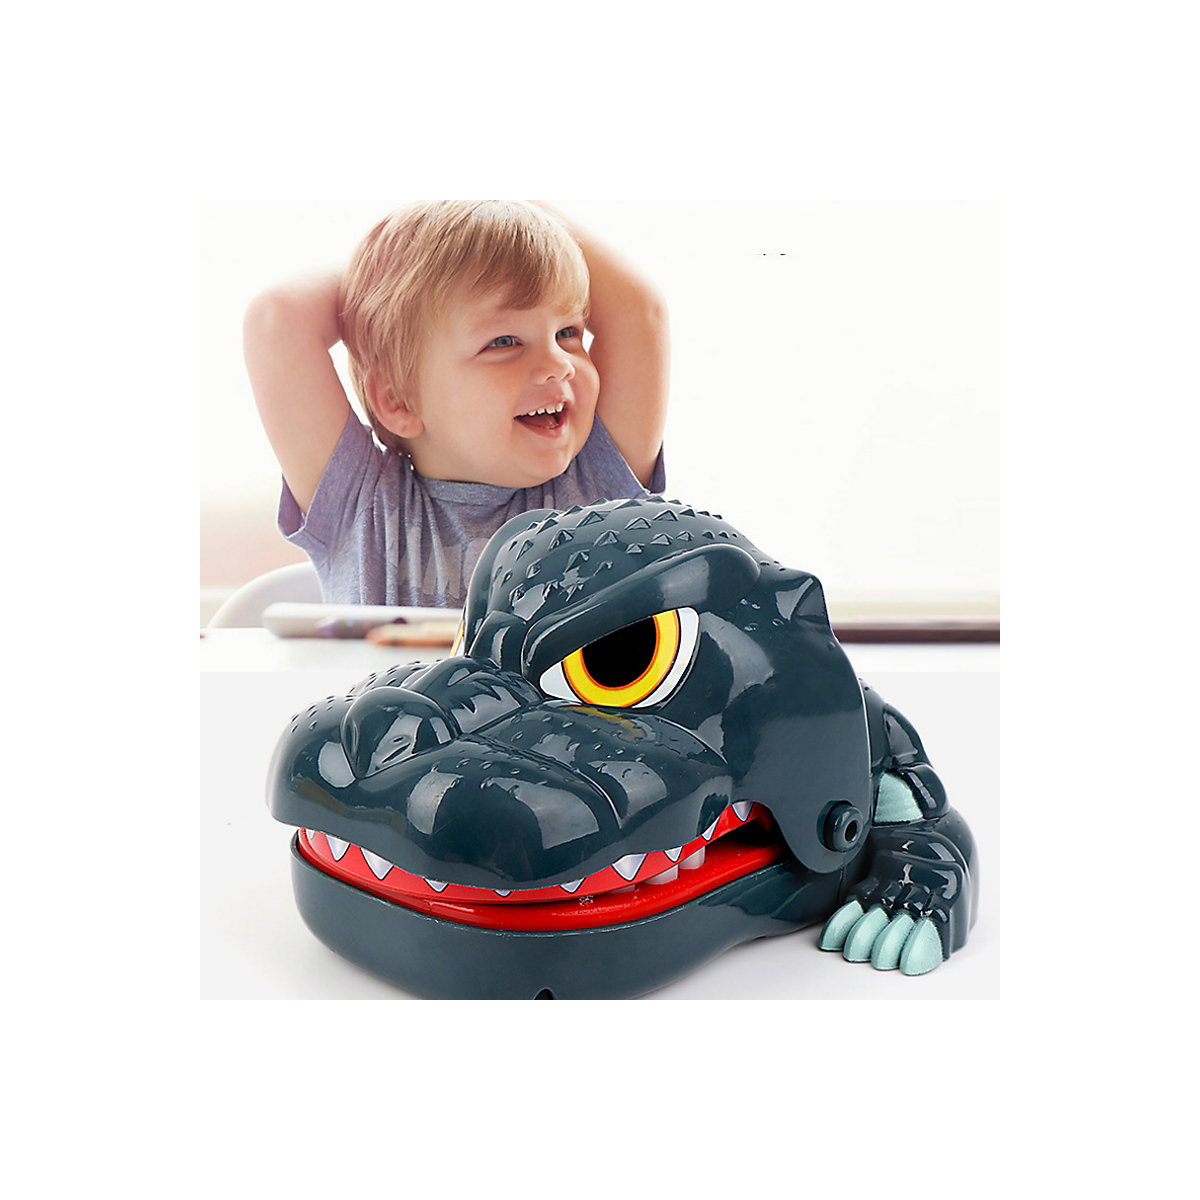 Brightake Mit Sound Toy Party -Spiel Krokodilspiele mit Klang und leichten Fingern